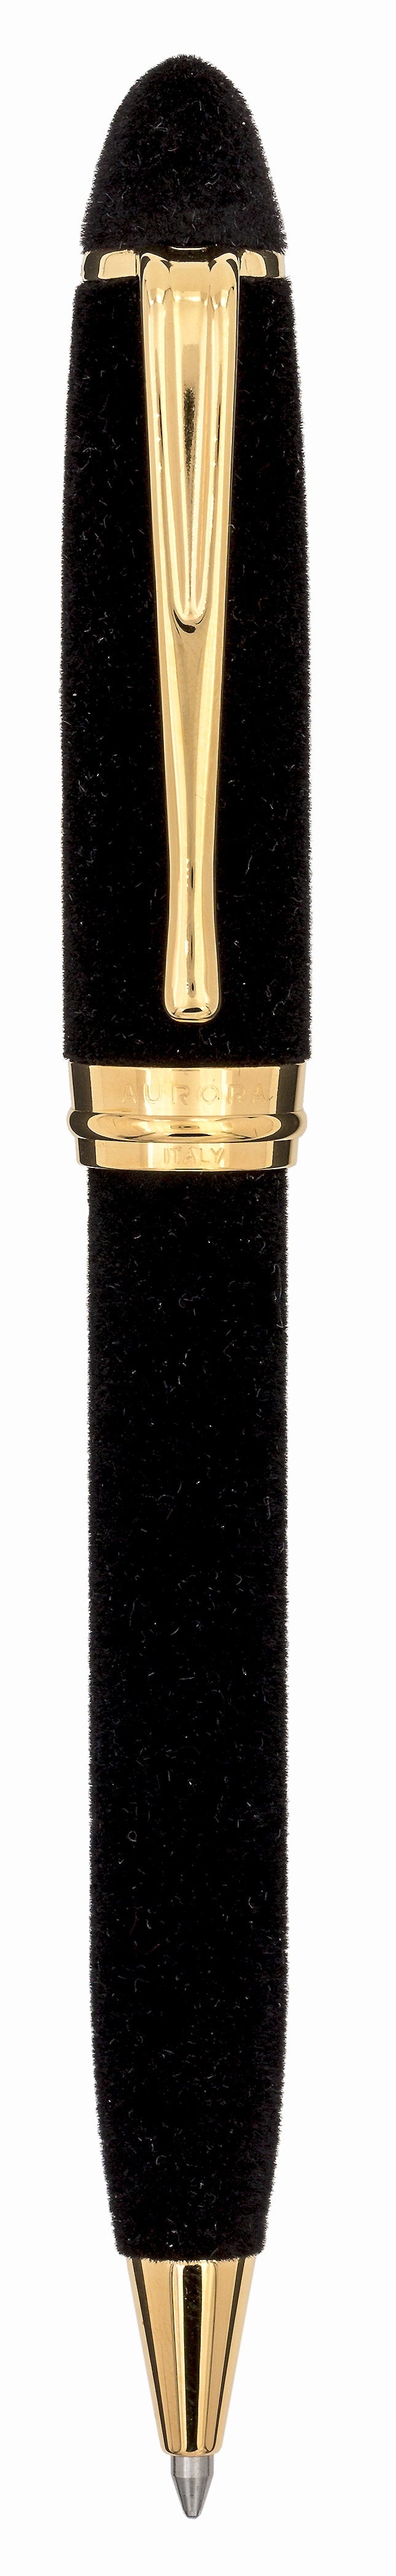 Aurora Ipsilon Velvet Black with Gold Trims Ballpoint Pen